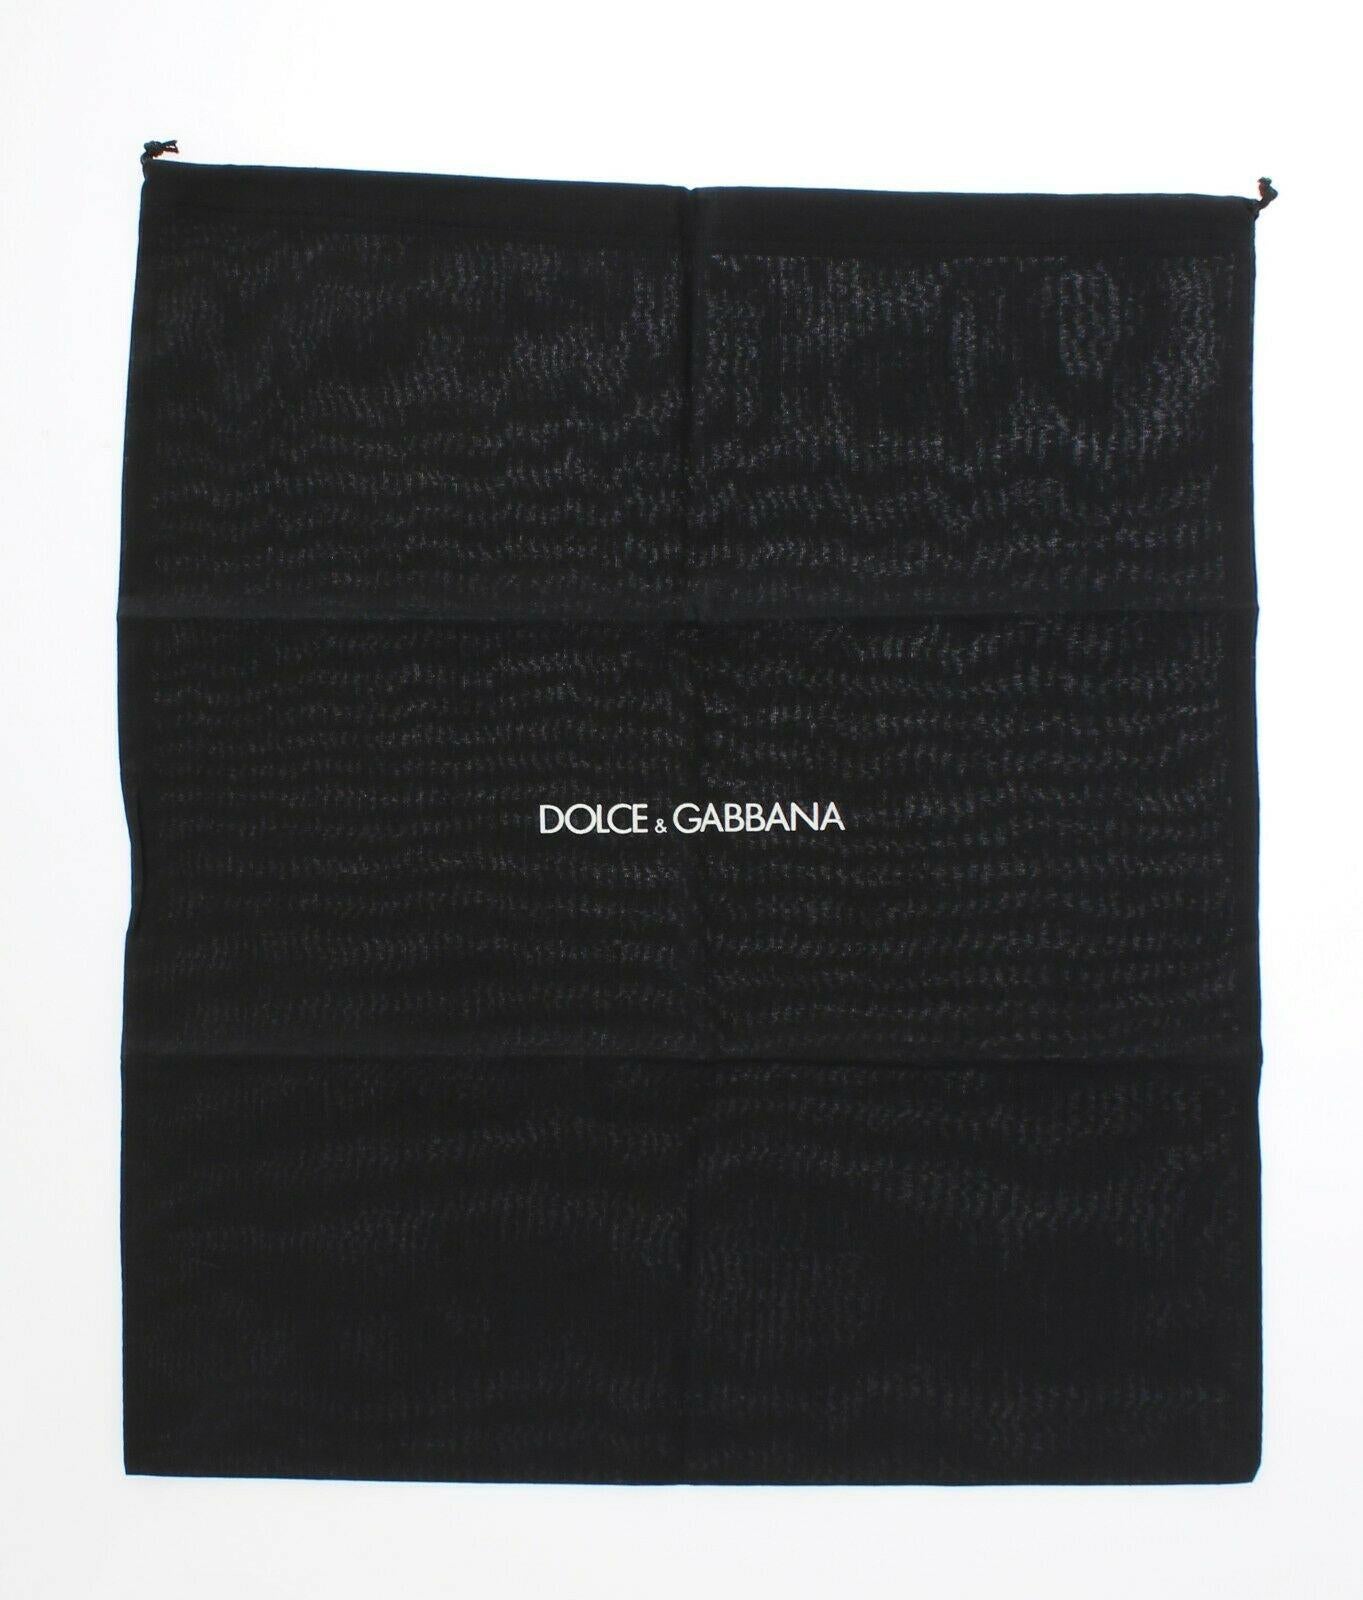 Dolce & Gabbana White Gold PVC Leather Sicily Top Handle Handbag Shoulder Bag For Sale 3